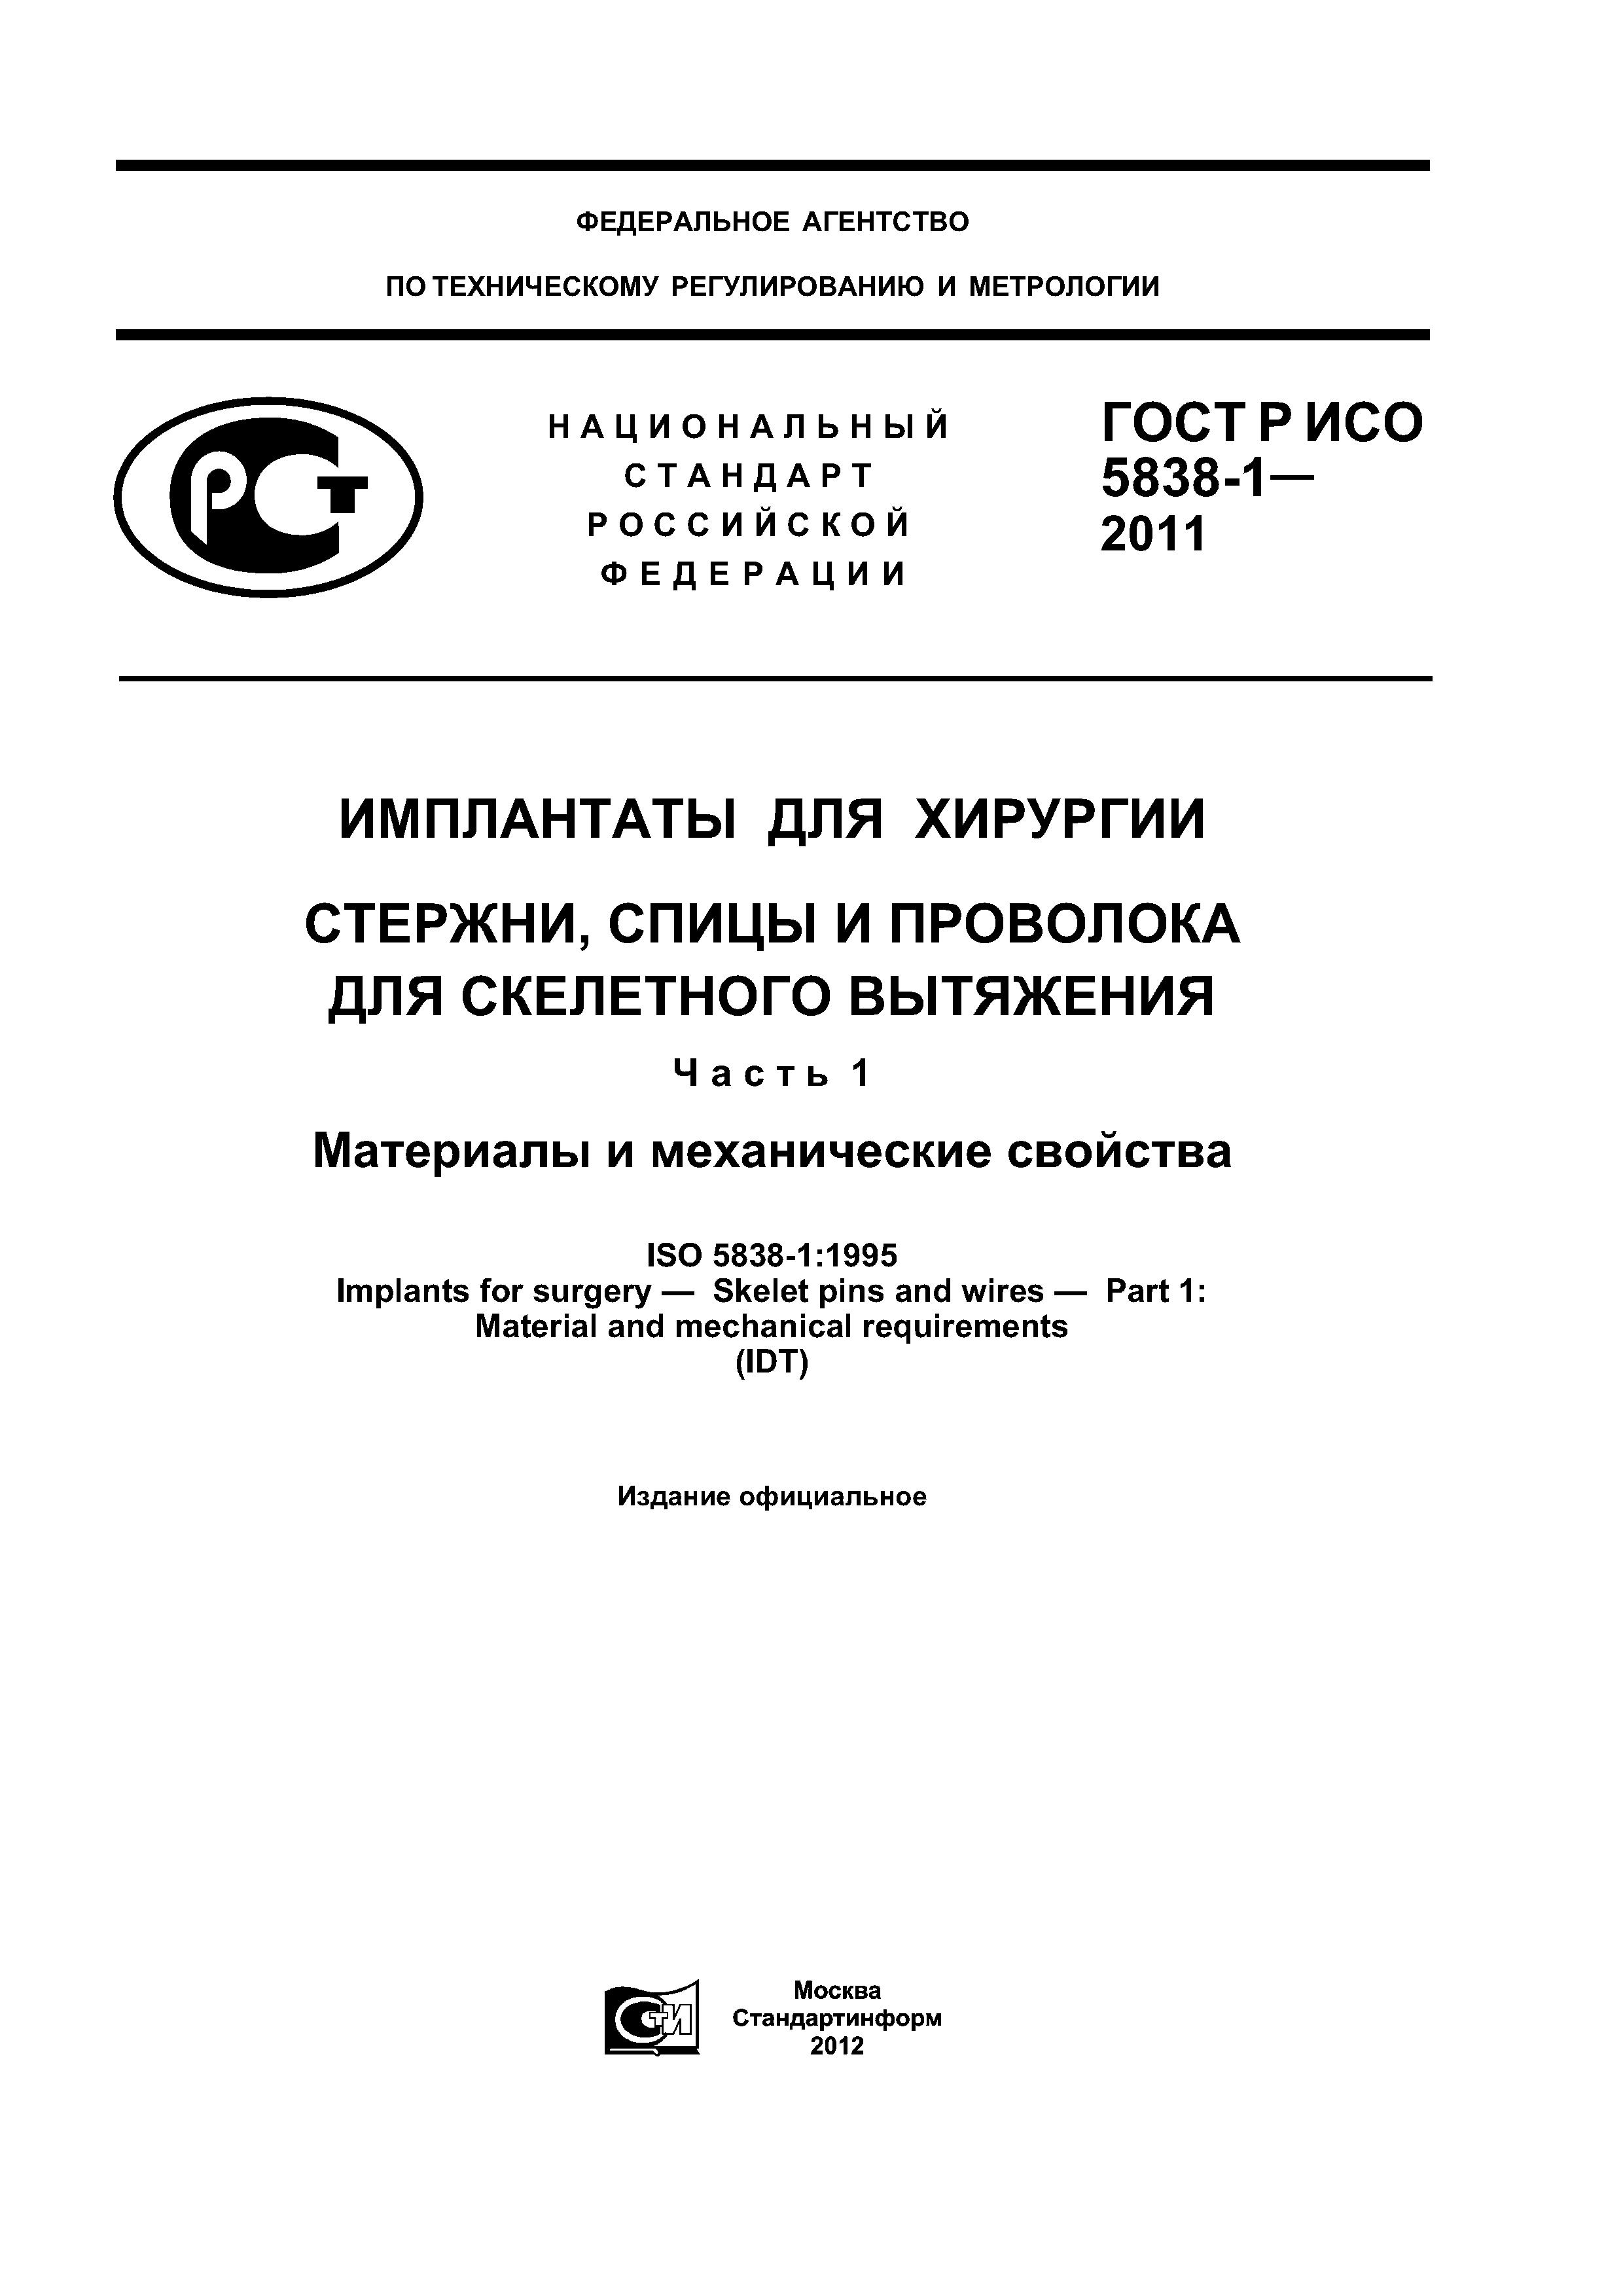 ГОСТ Р ИСО 5838-1-2011